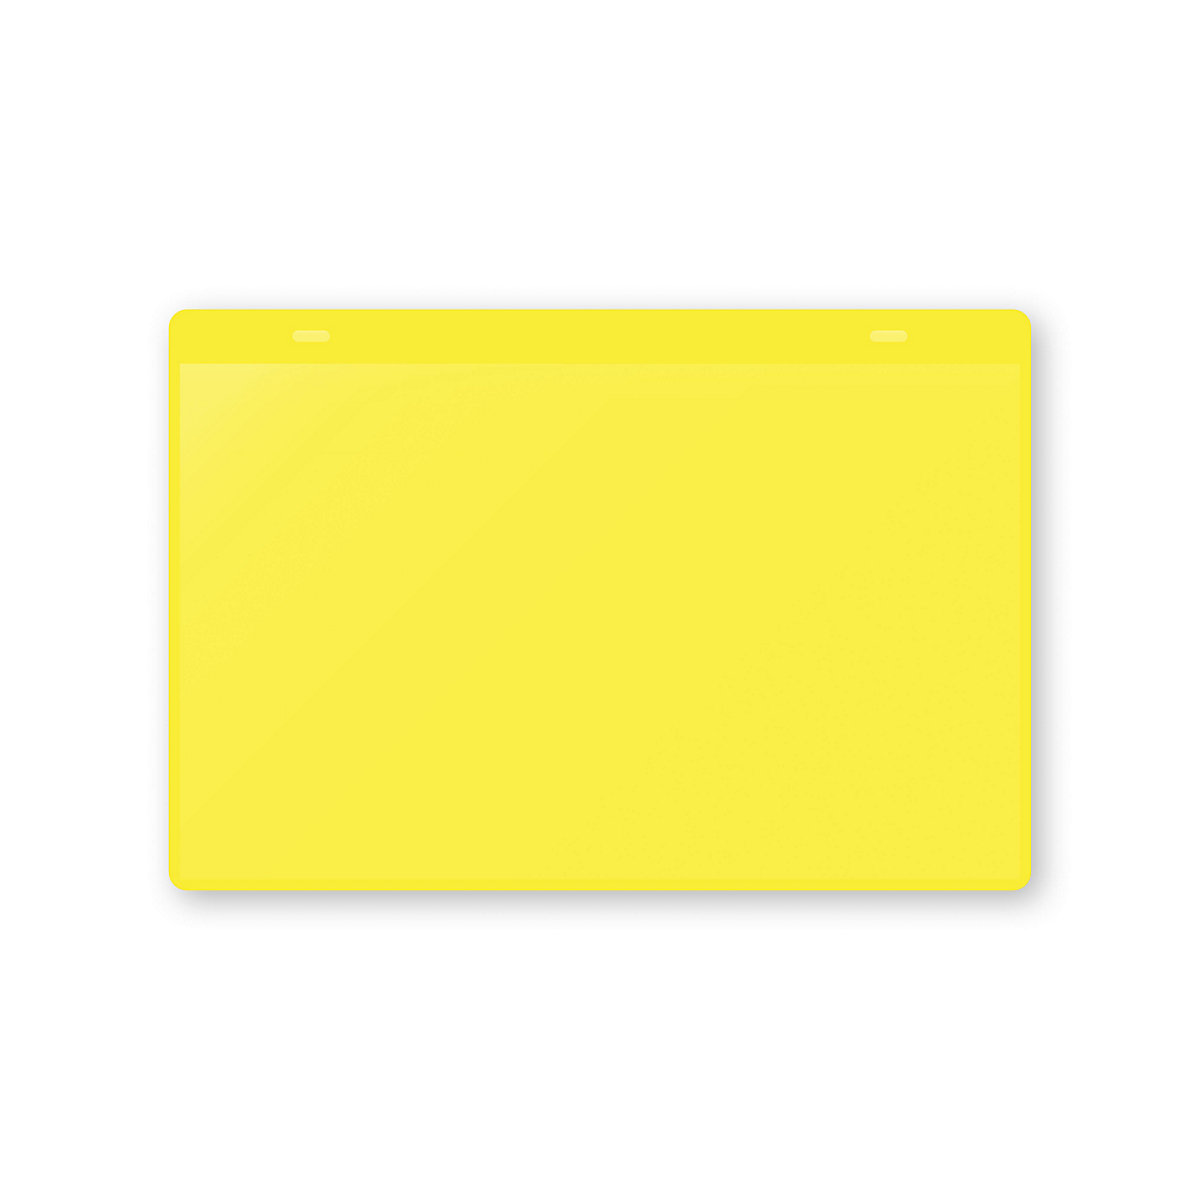 Dokumentumtartó tasakok akasztópánttal, DIN A5, fekvő, cs. e. 50 db, sárga